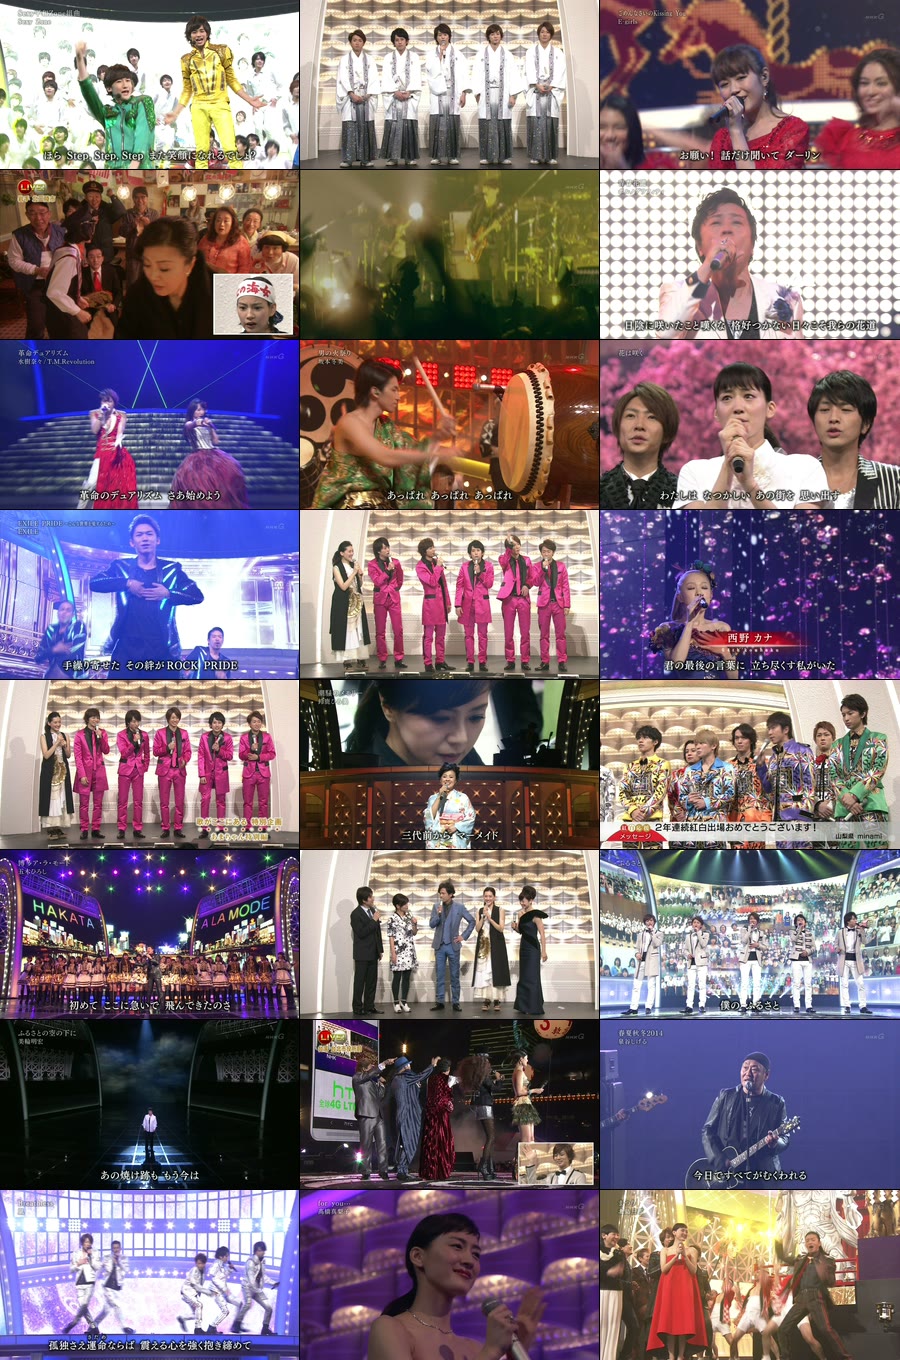 第64回红白歌会 (NHK紅白歌合戦) (2013) 1080P HDTV [TS 27.5G]HDTV、HDTV日本、HDTV演唱会、日本演唱会、蓝光演唱会6